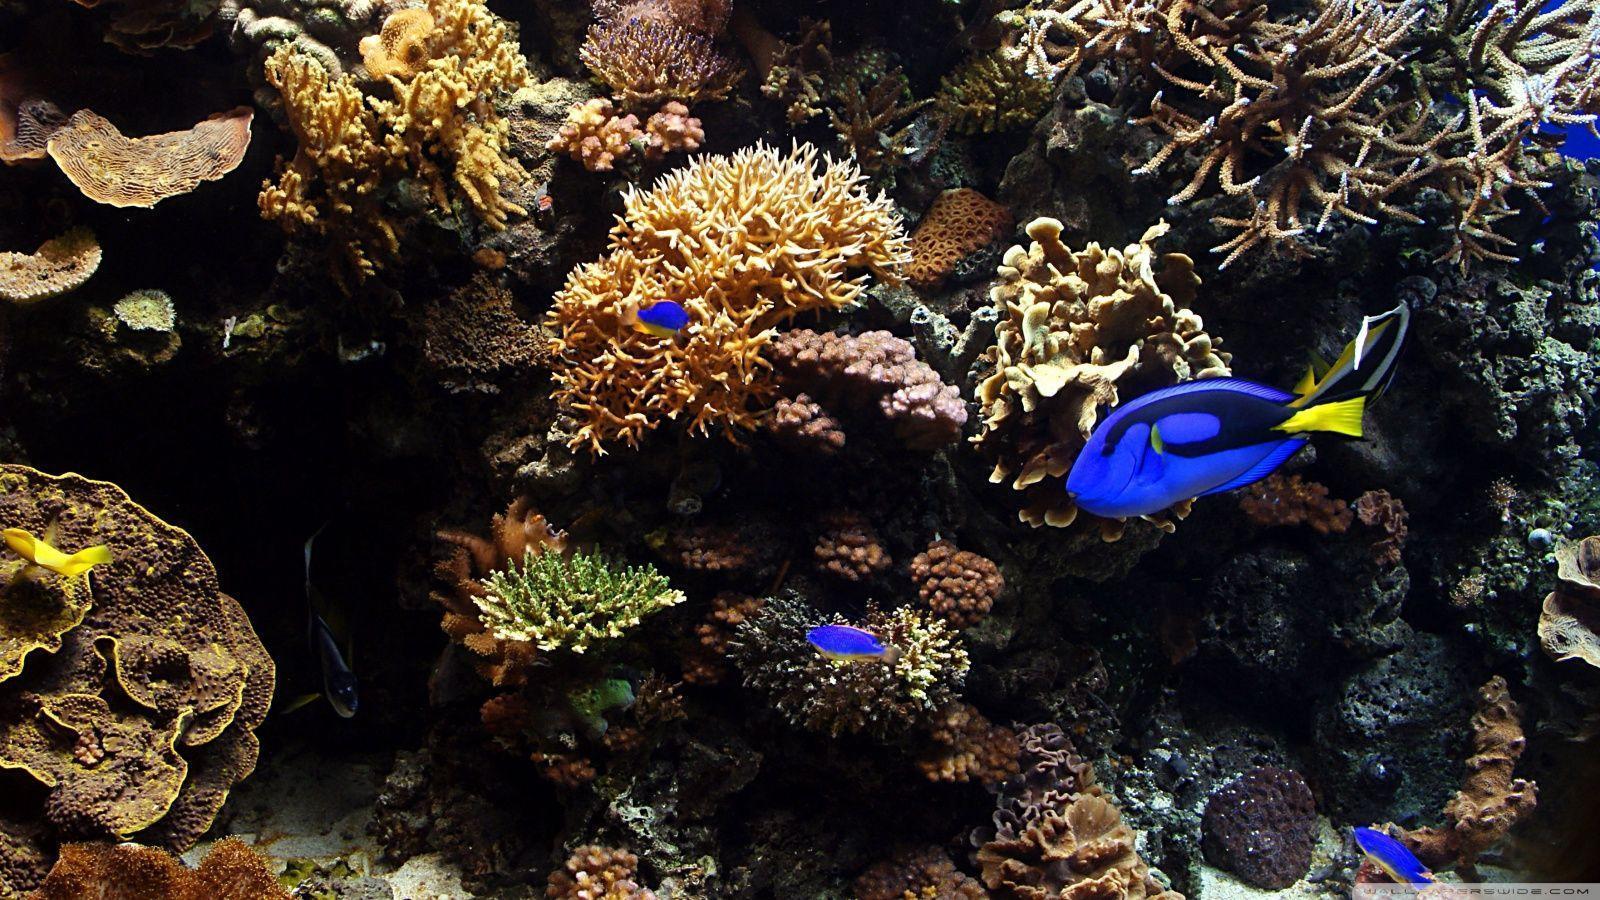 Aquarium Fish HD desktop wallpaper, Widescreen, High Definition